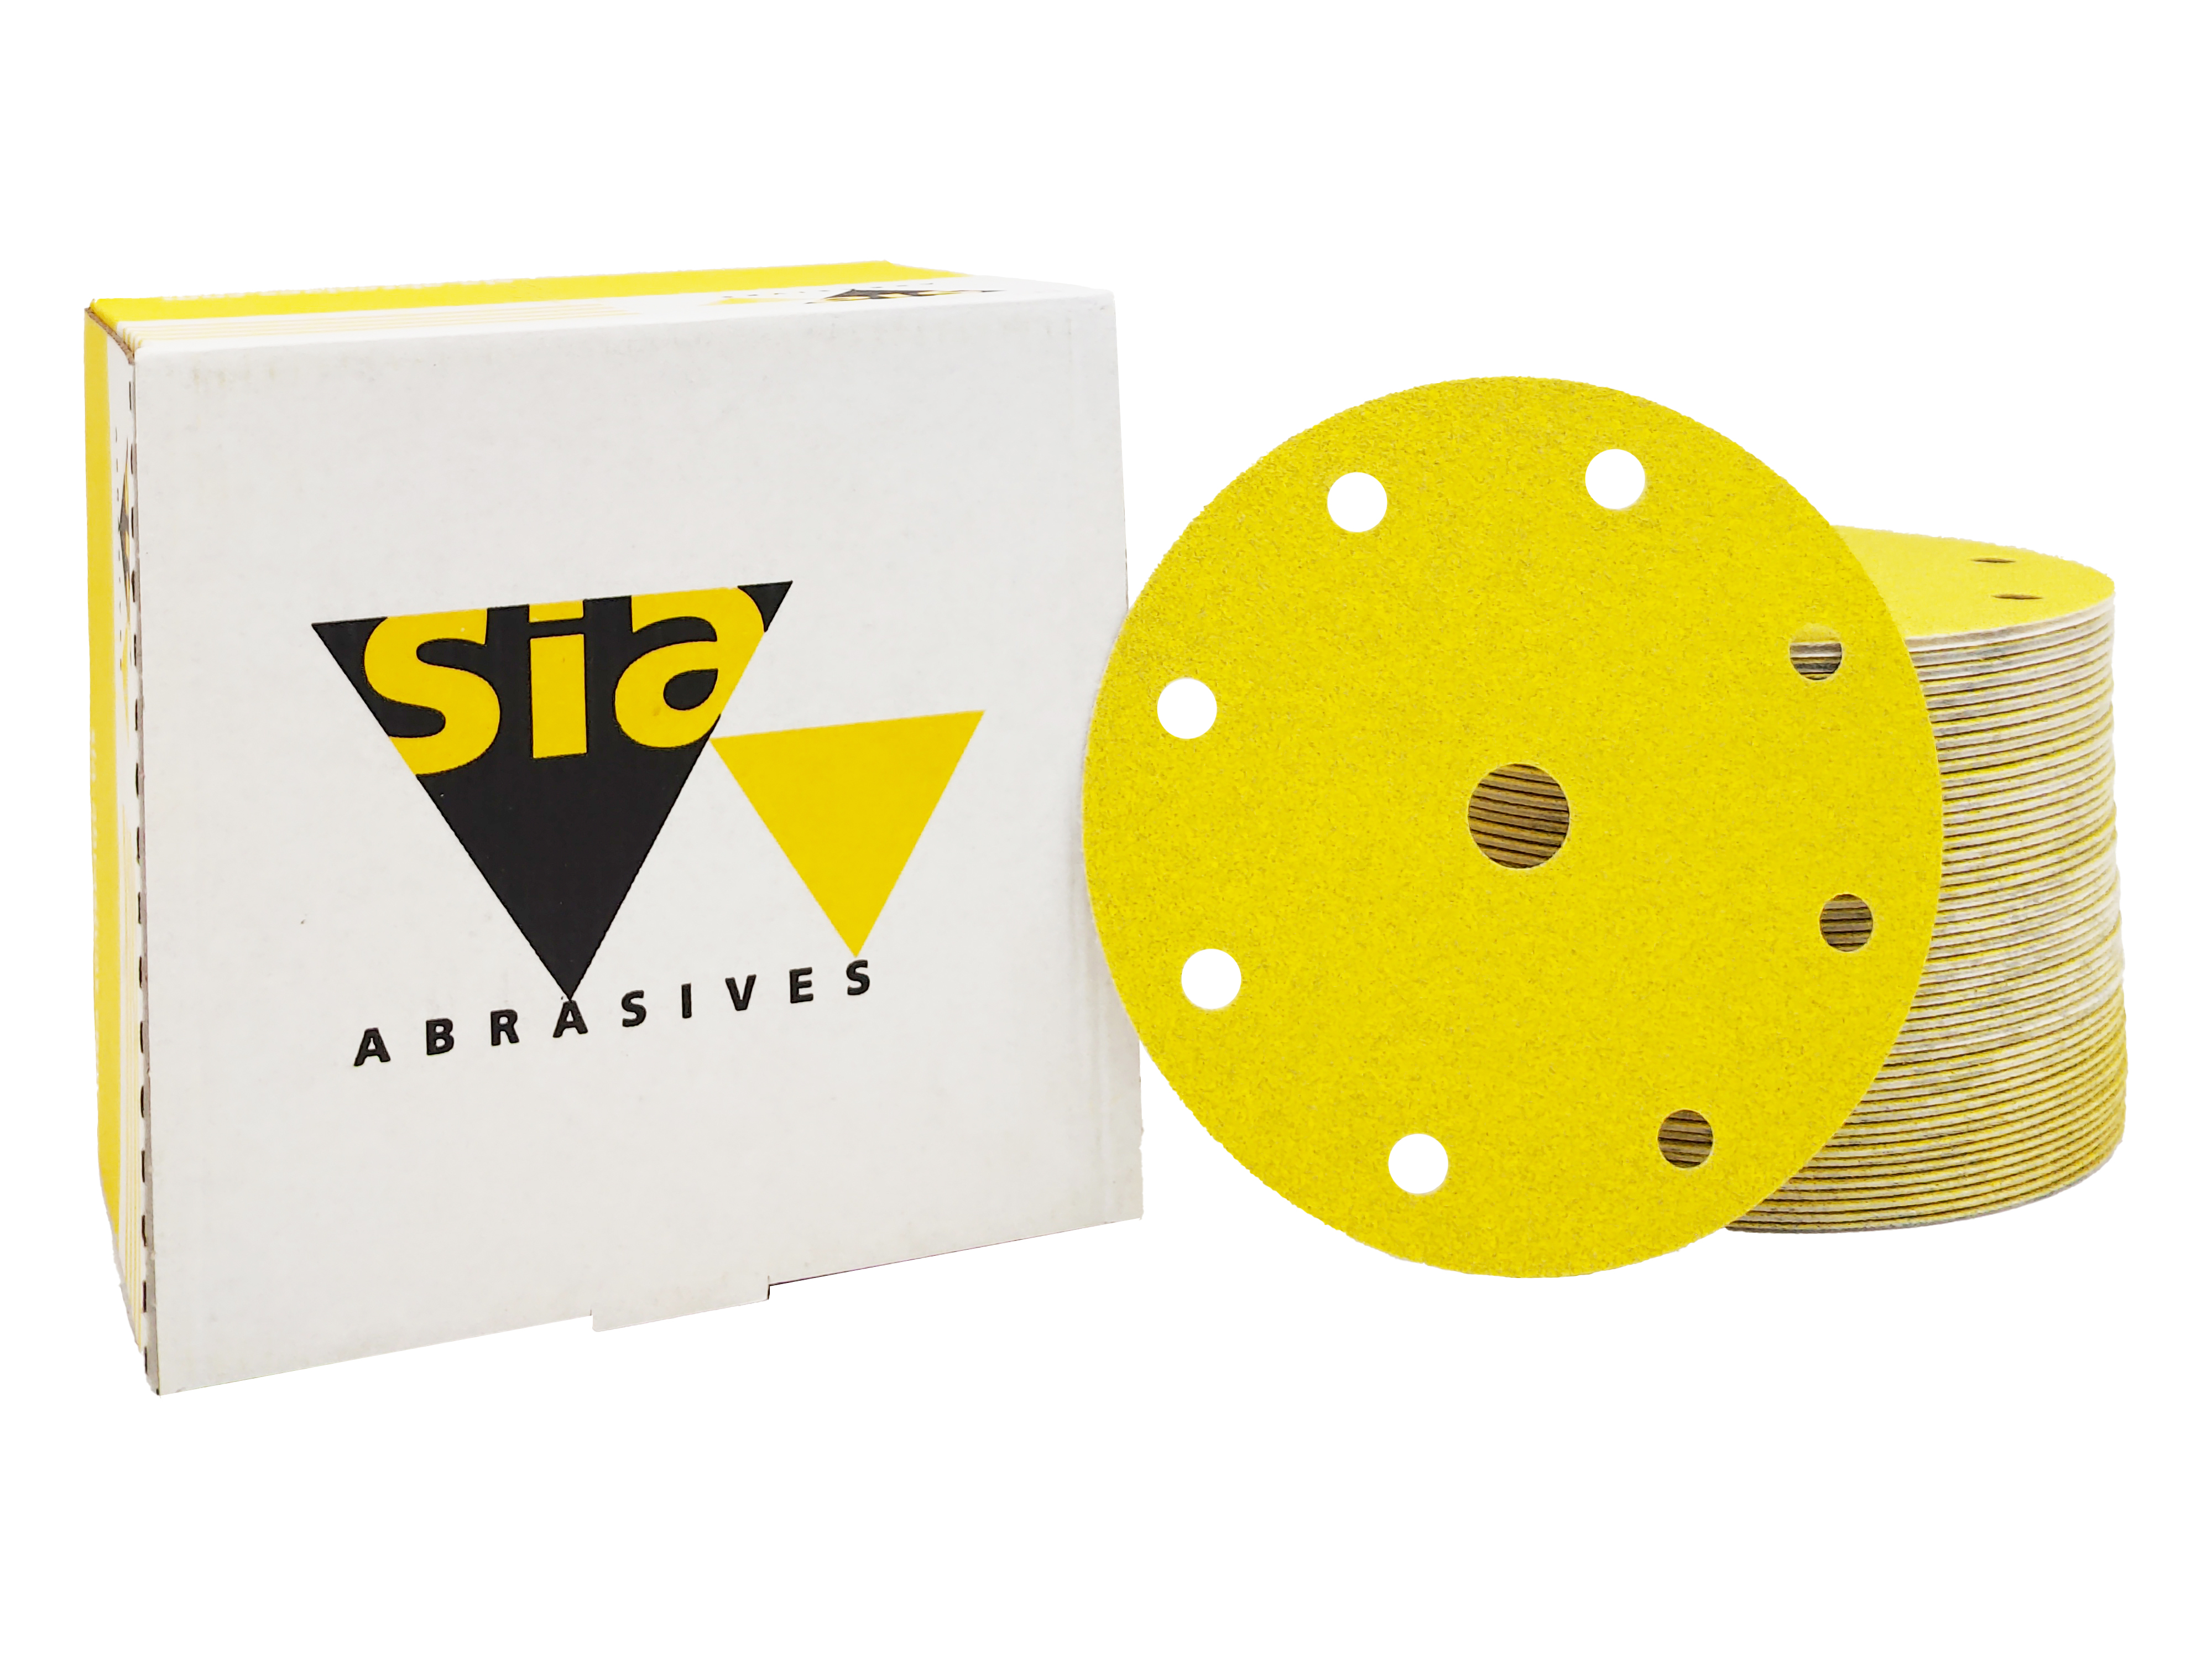 Abbildung Sia Siarexx 150mm 9L Verpackung und Scheiben als Stapel.